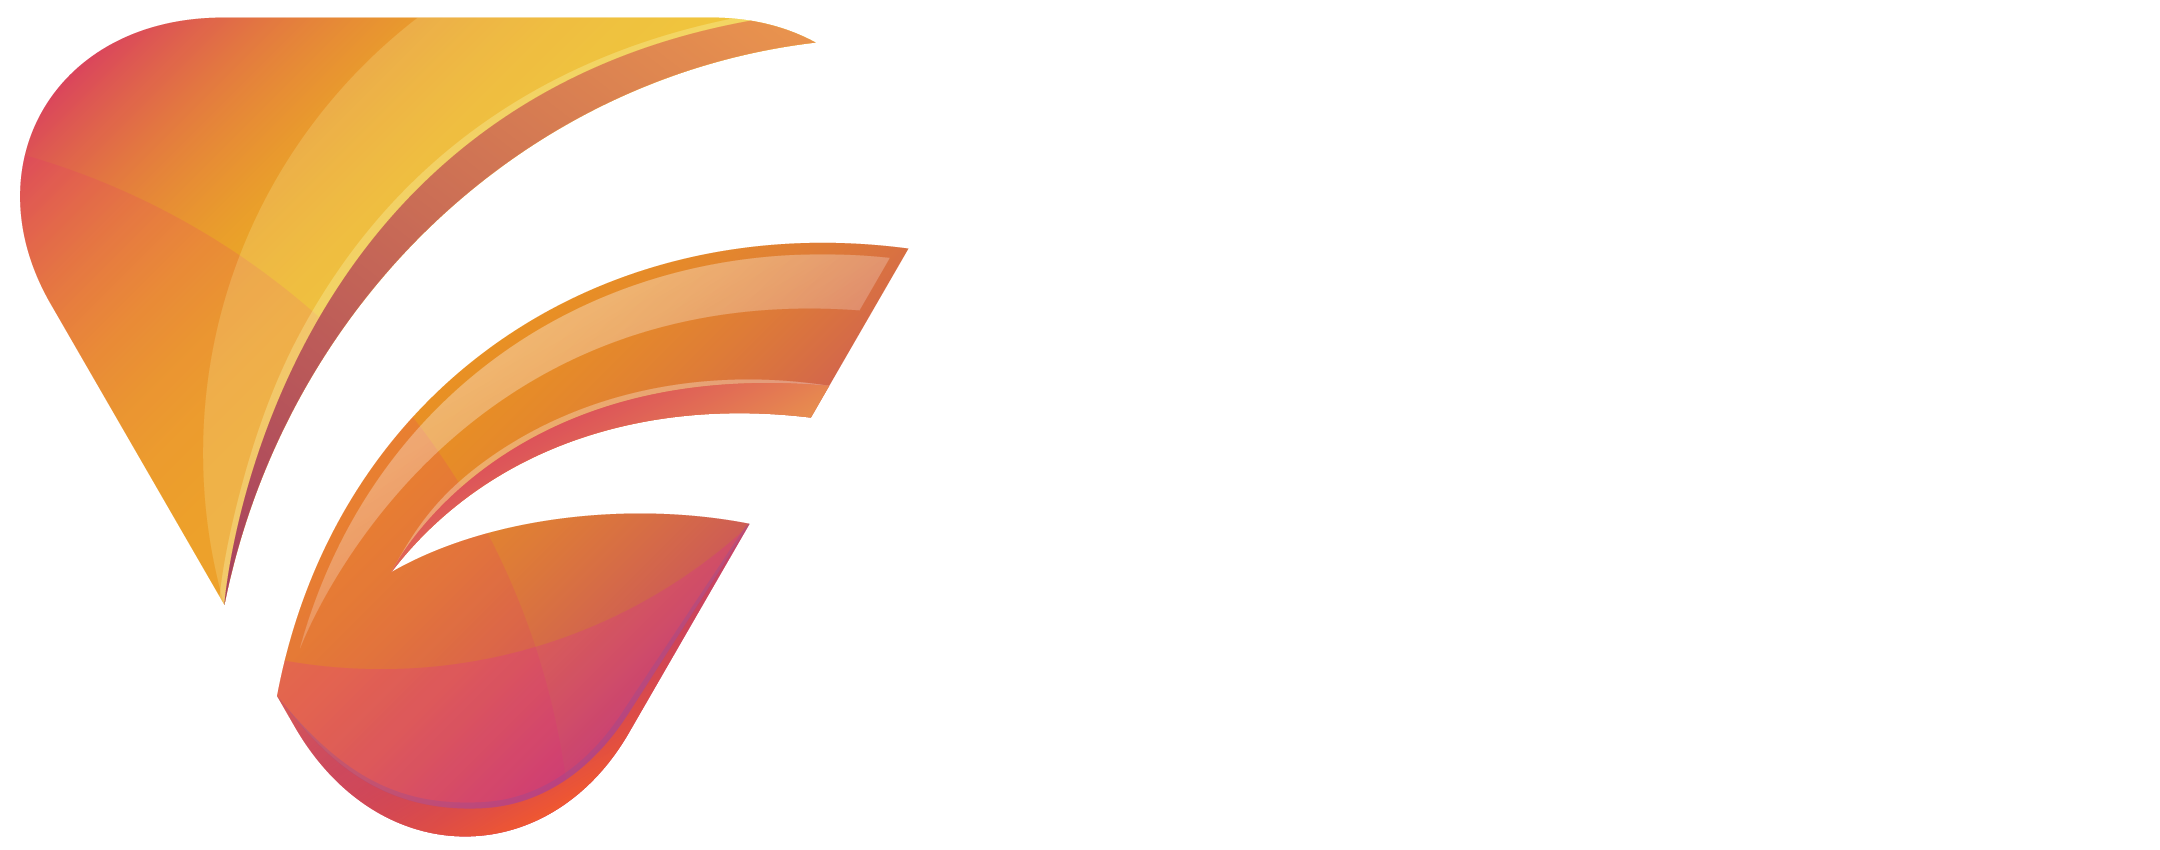 TFS Creative House logo white text